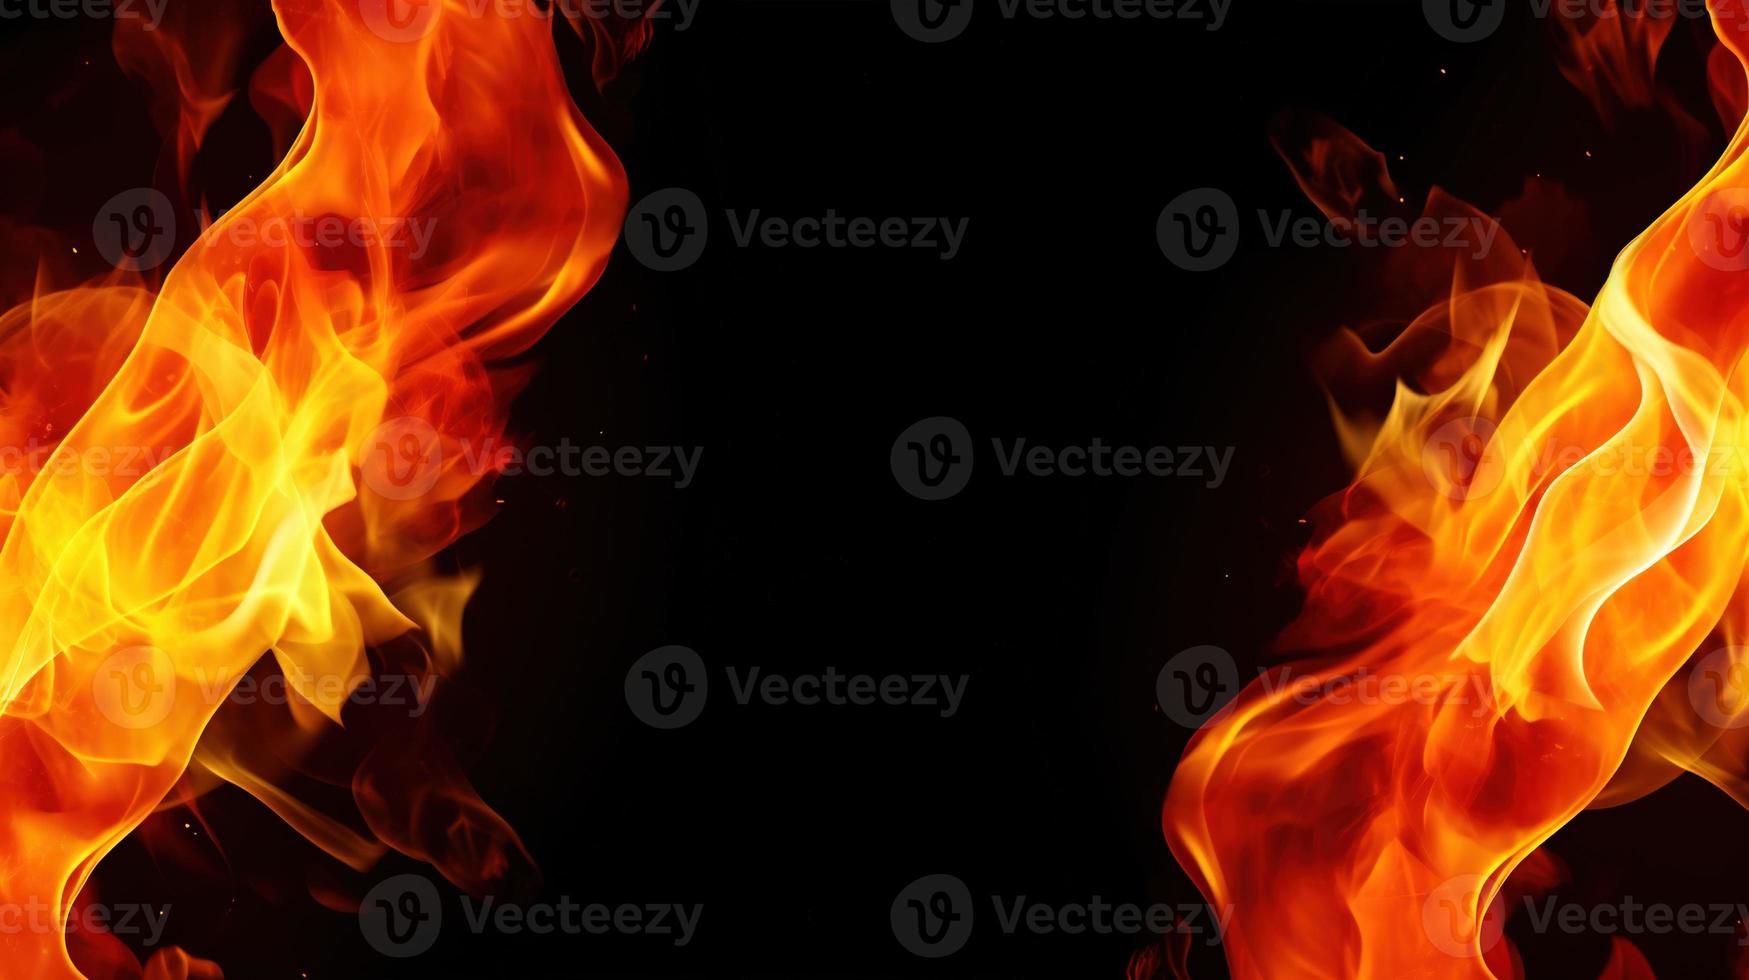 brand vlammen Aan zwart achtergrond. detailopname van brand vlammen geïsoleerd Aan zwart achtergrond. foto